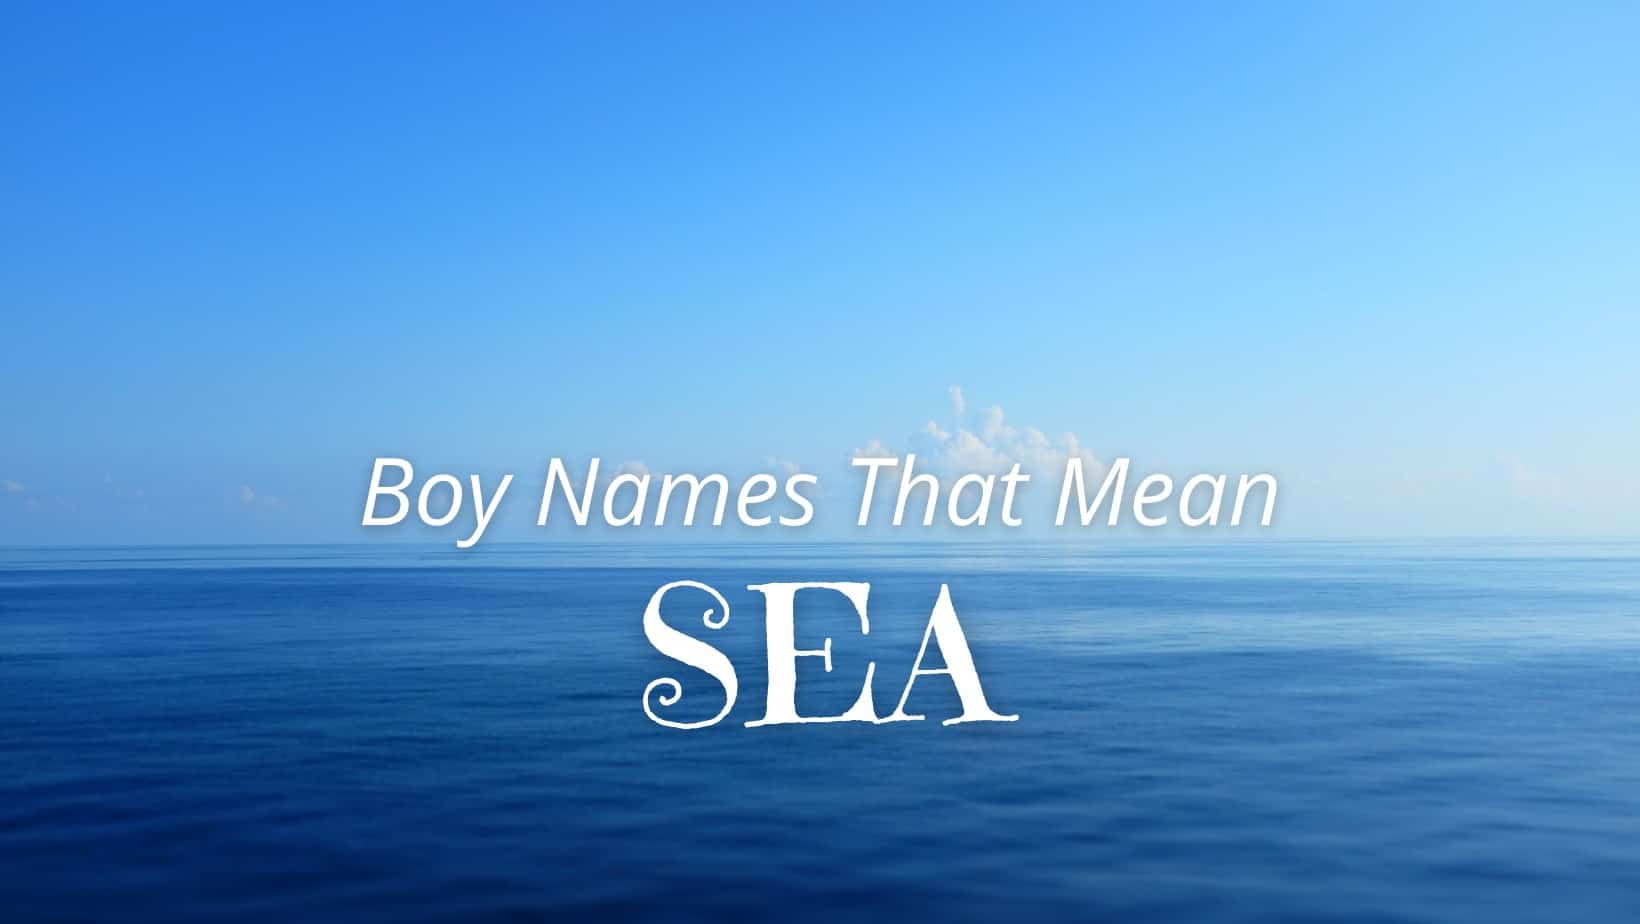 Boy Names That Mean Sea